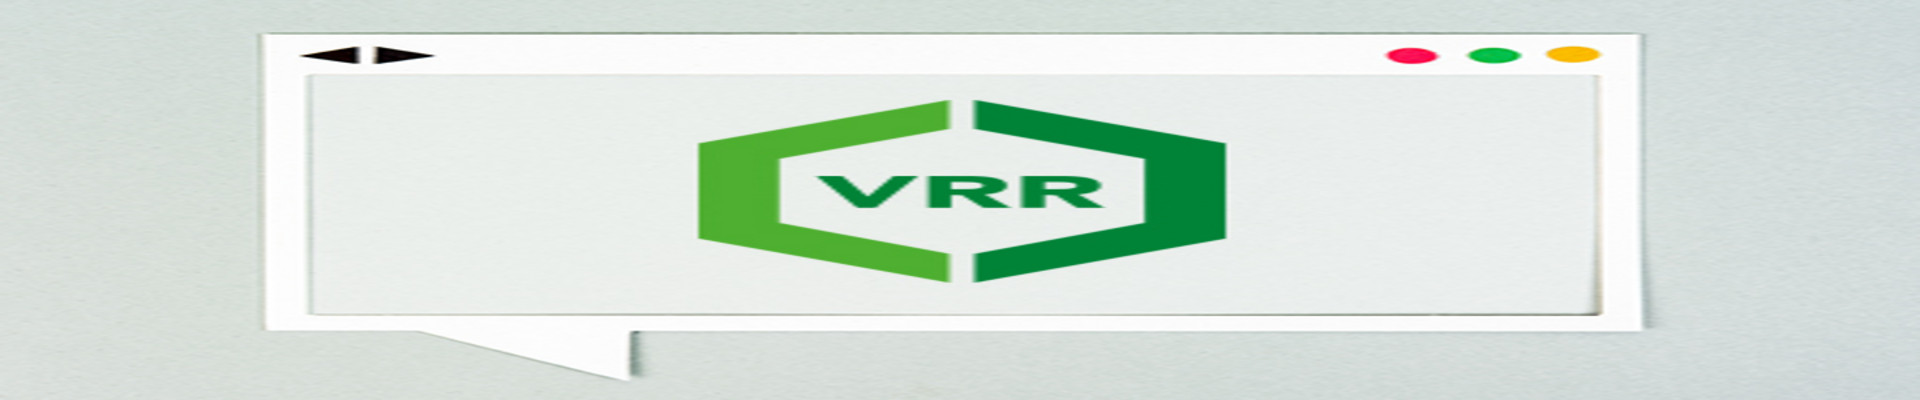 Das VRR-Logo geöffnet in einem Internetbrowser